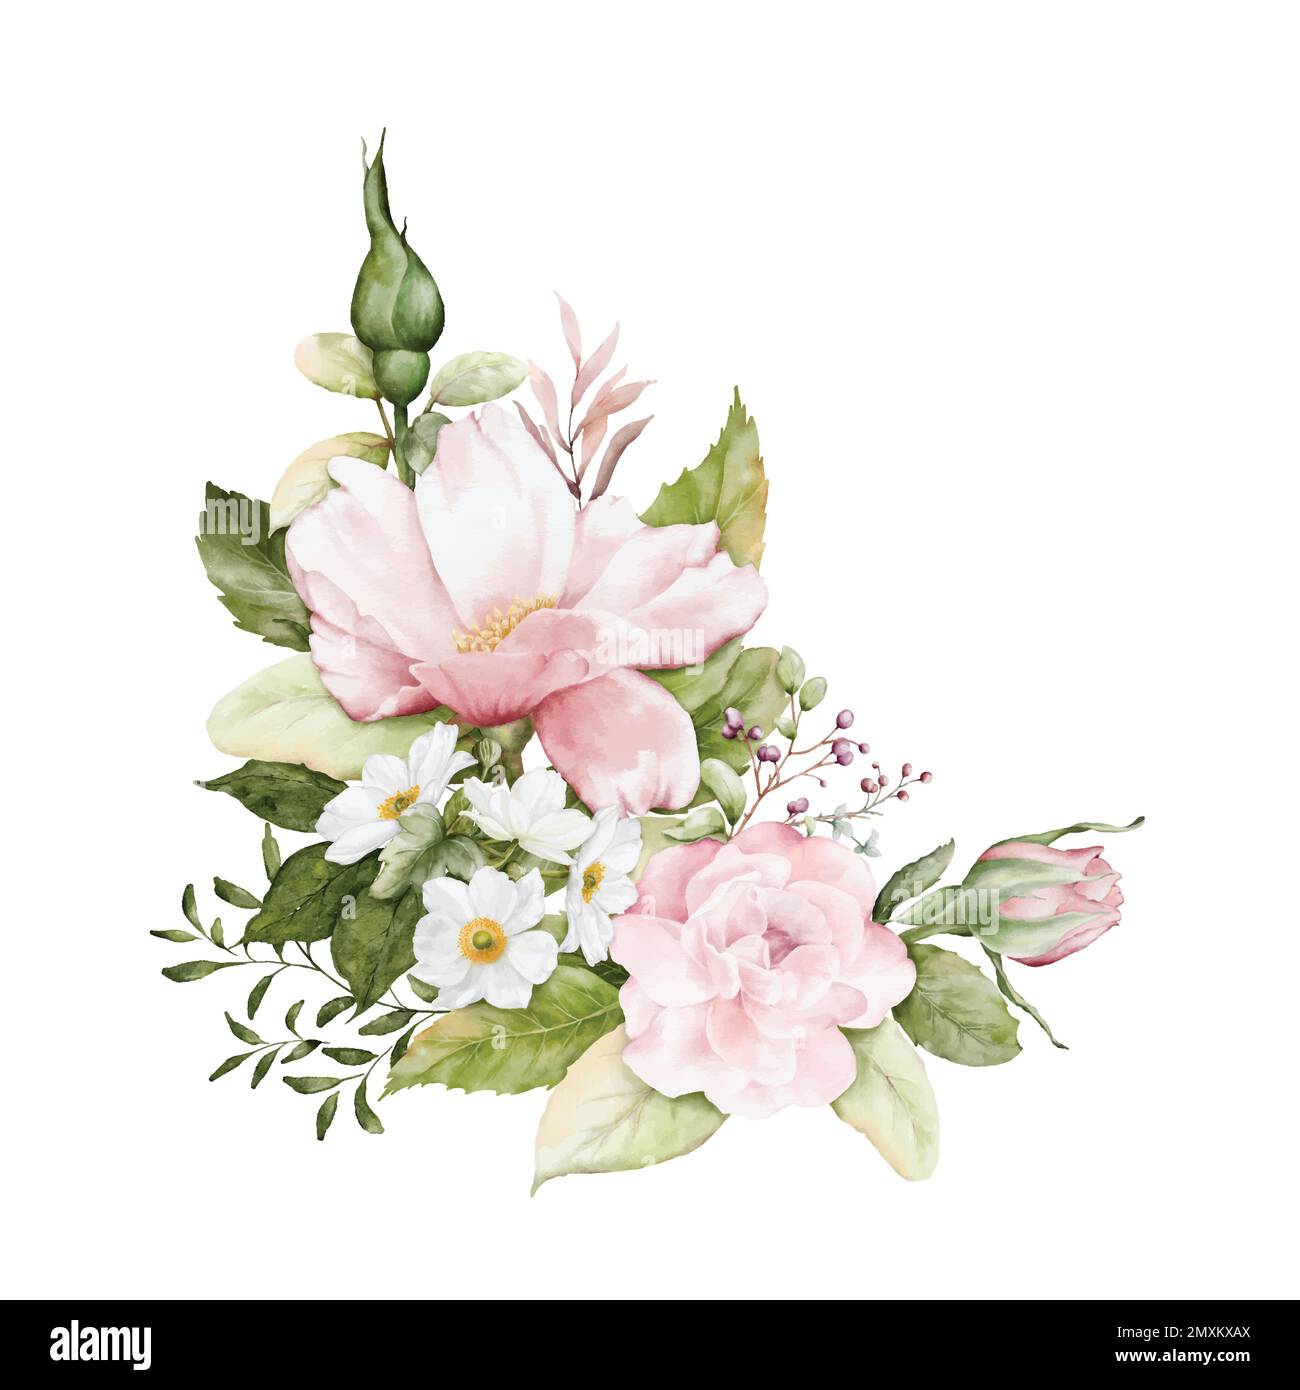 Aquarelle Arrangements mit Rosenblumen. Blumensträuße aus rosafarbenen Rosen, weißen Blumen und Blätter für Hochzeiten, Valentinskarten oder Grußkarten. Botan Stock Vektor